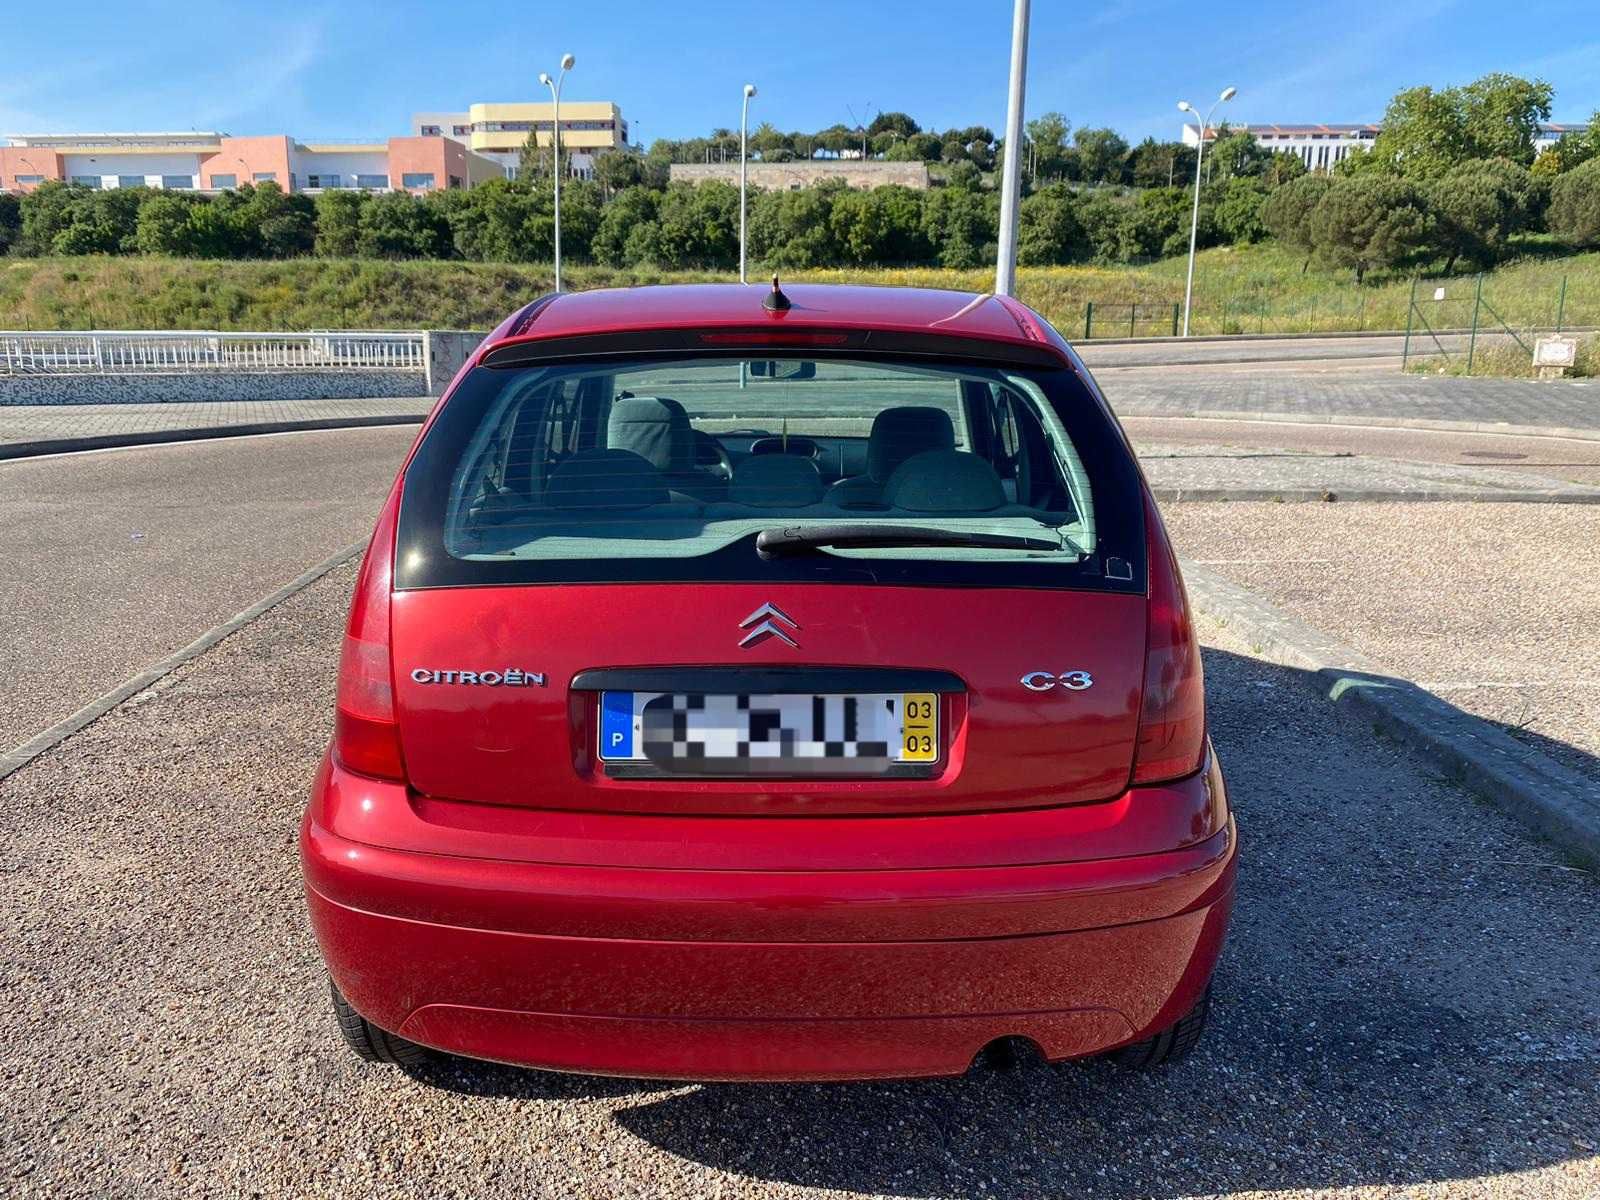 Citroën C3 Poucos km